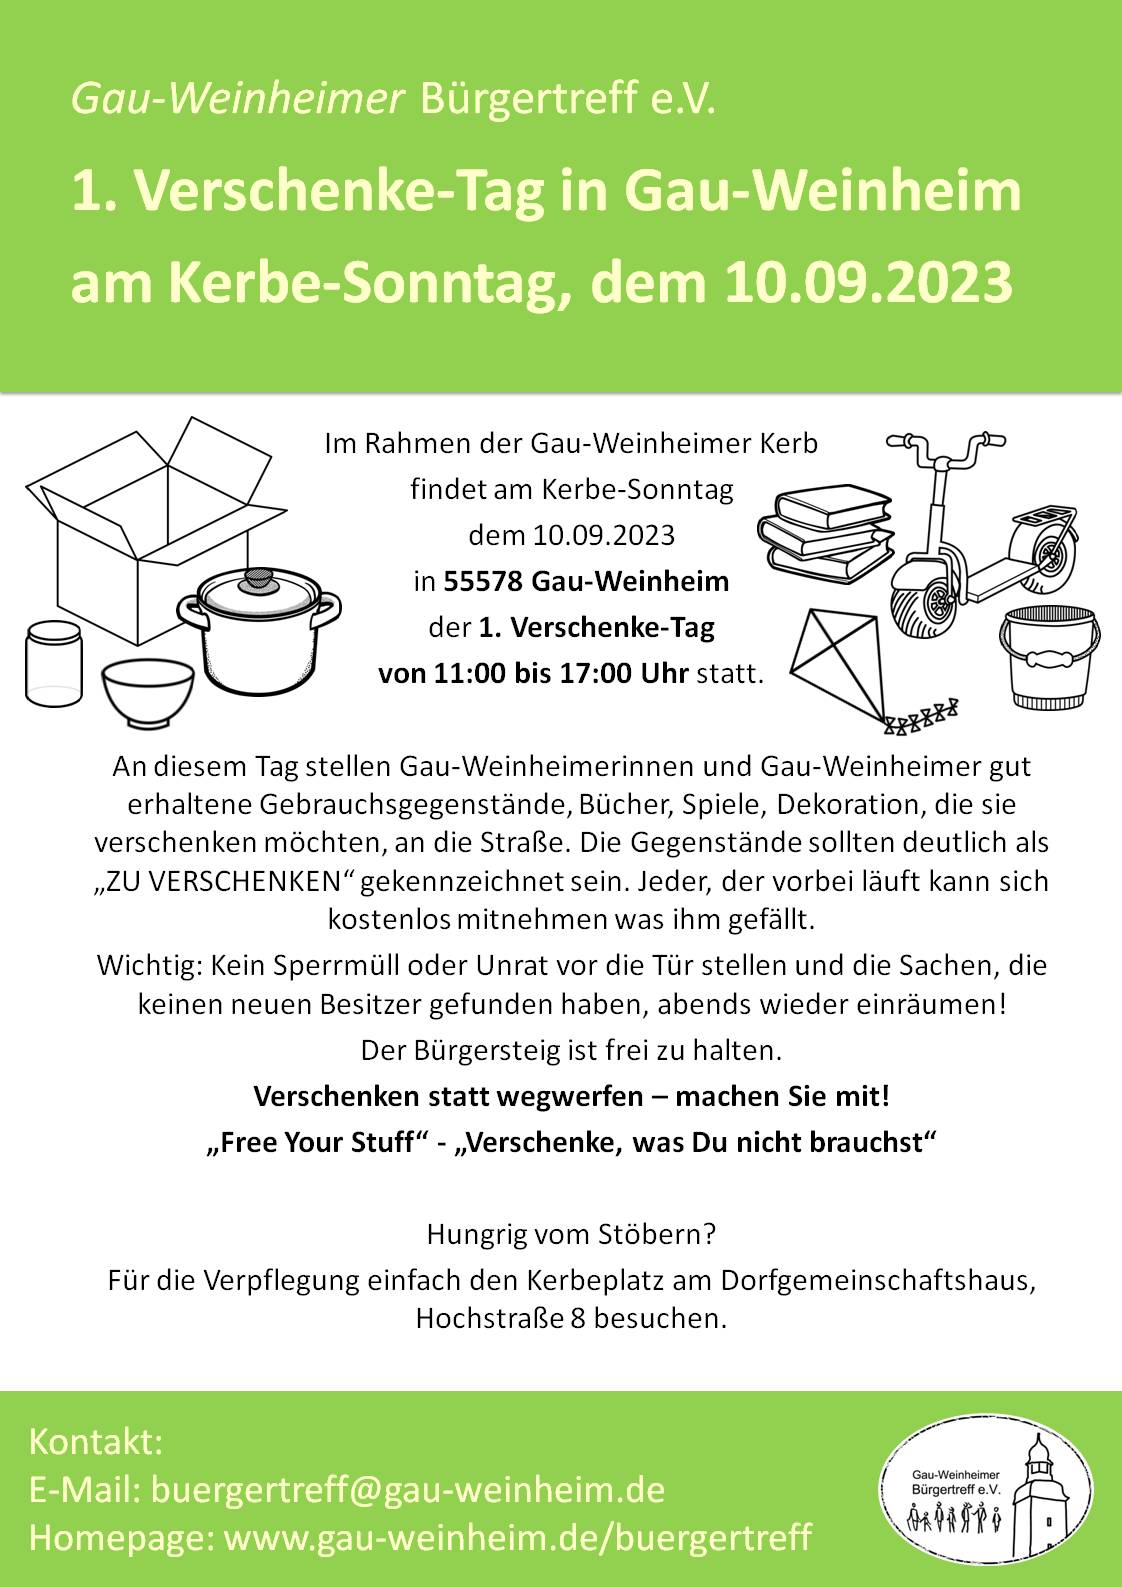 1. Verschenke-Tag in Gau-Weinheim am Kerbe-Sonntag 10.09.2023